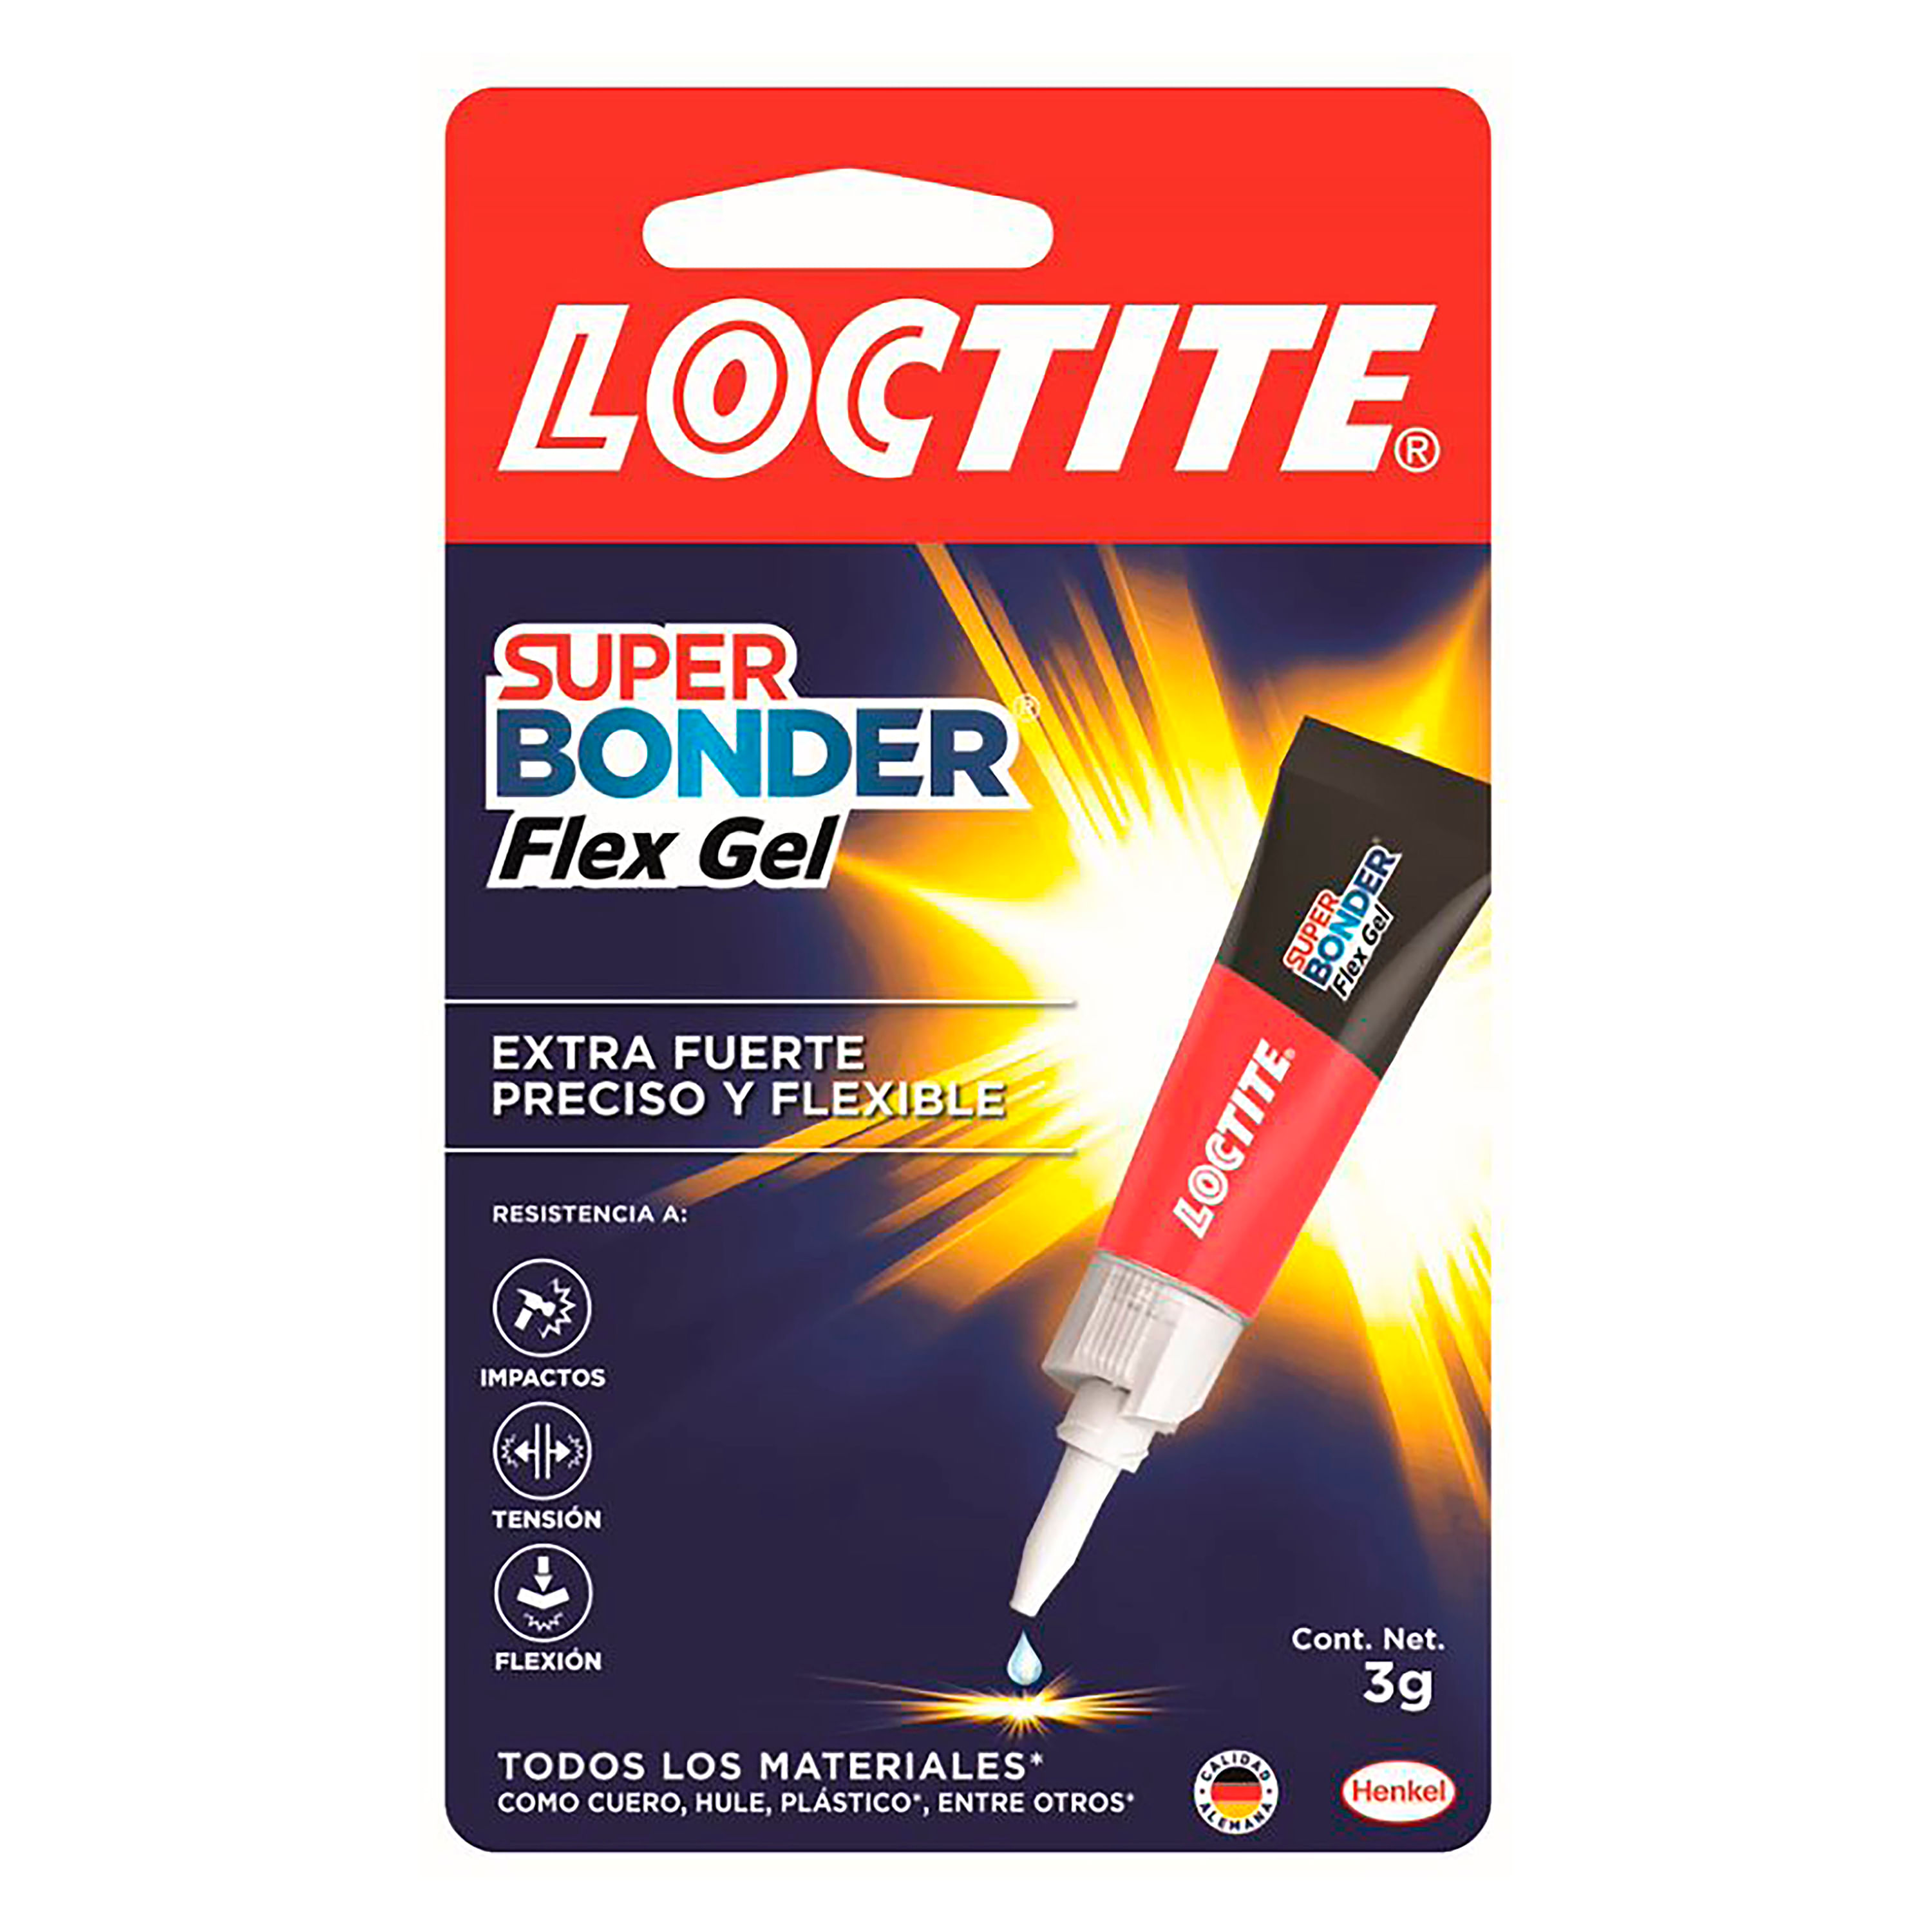 Pegamento Instantáneo Loctite Super Bonder Pincel - 5g